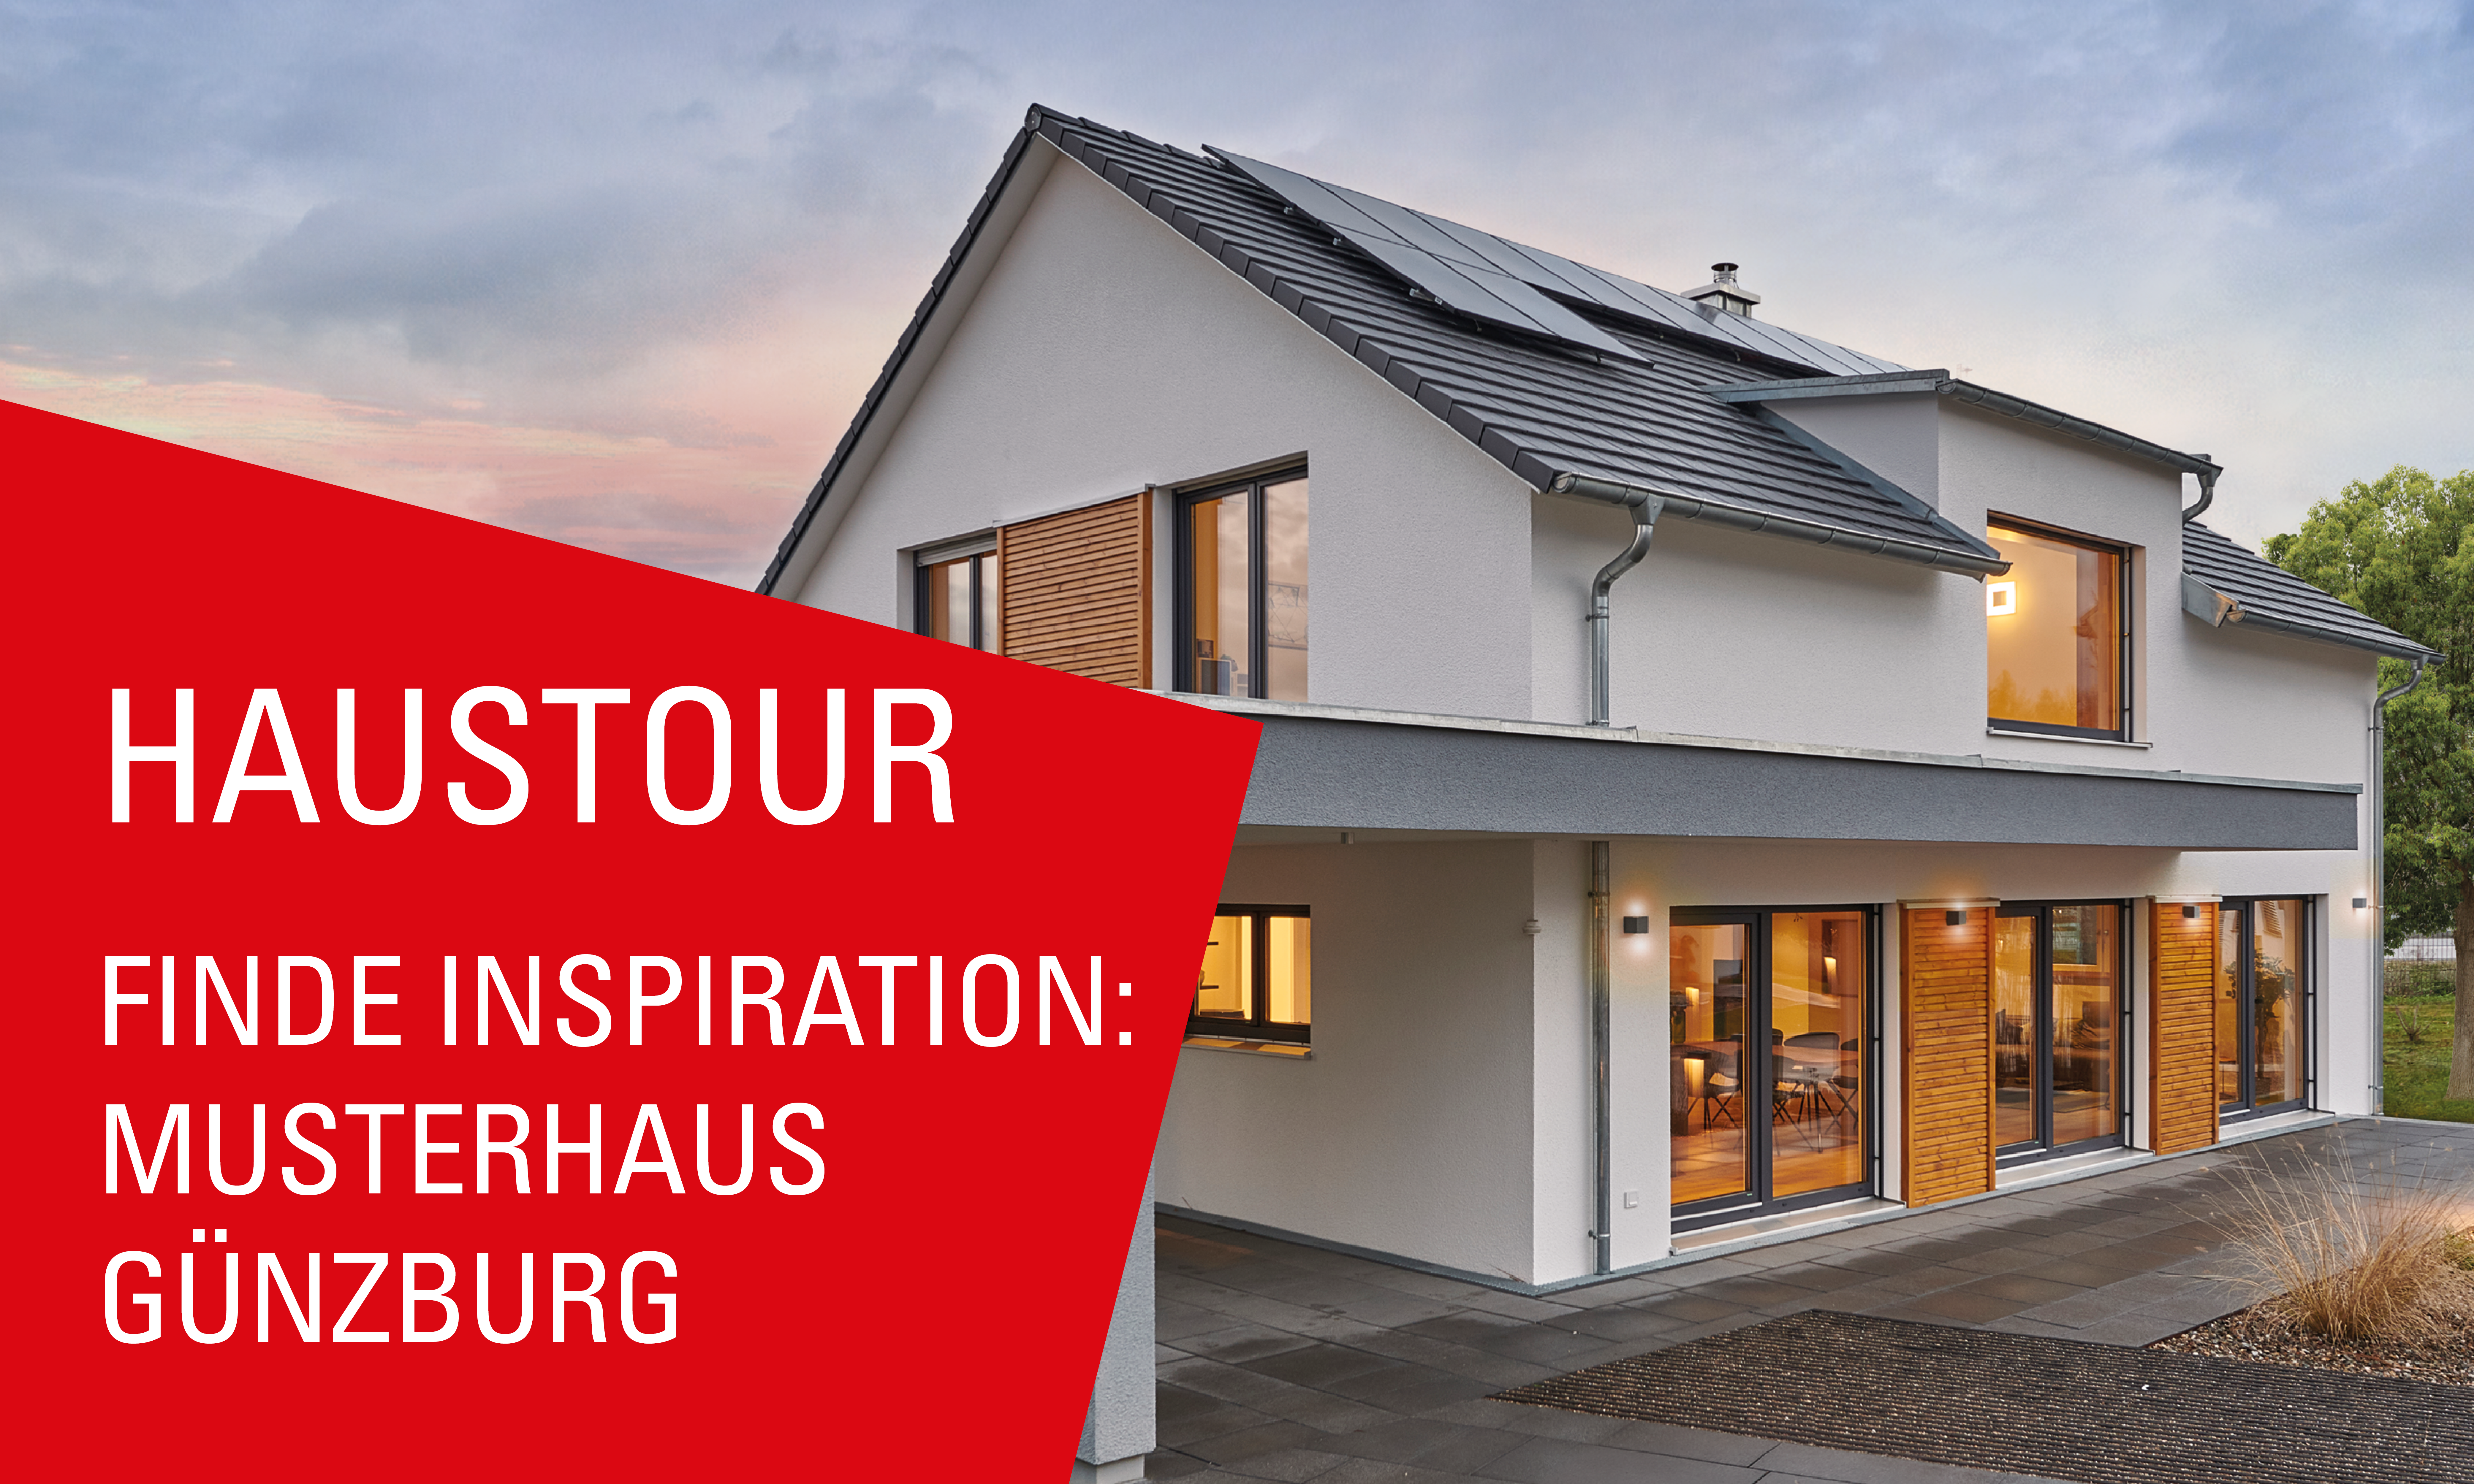 Haustour durchs Musterhaus Günzburg von Fertighaus WEISS